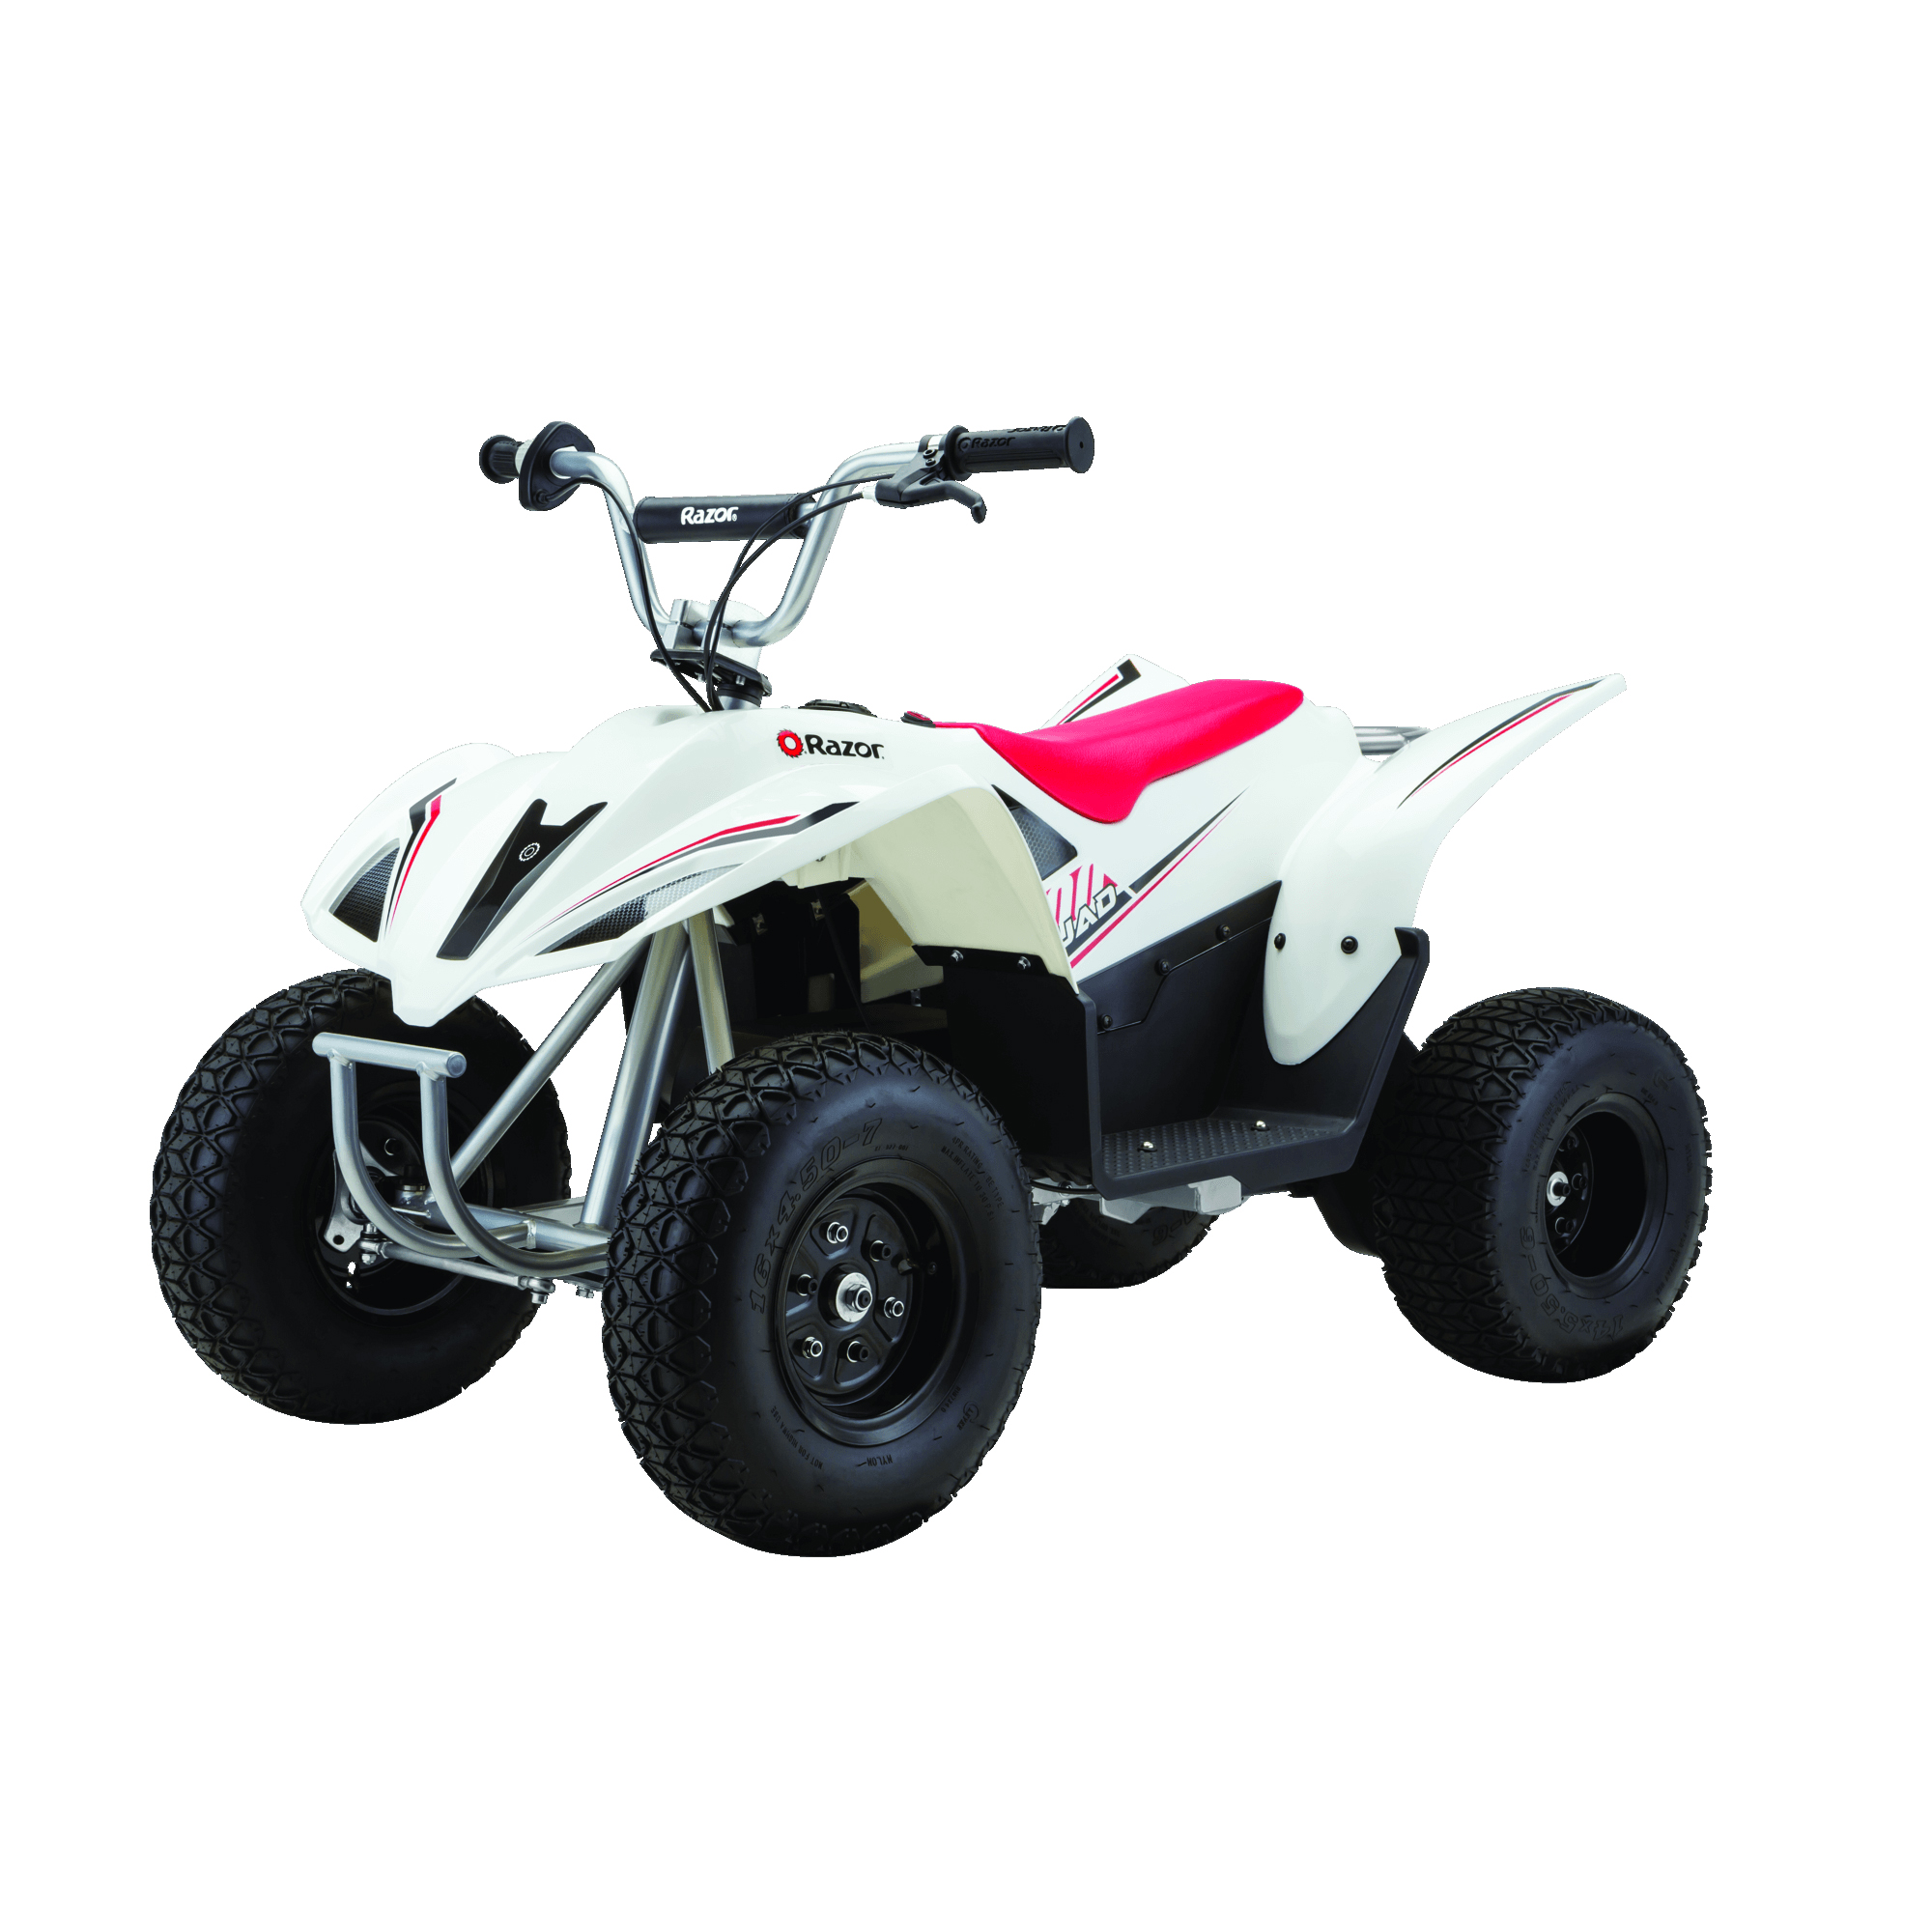 Razor Dirt Quad 500 ATV Parts